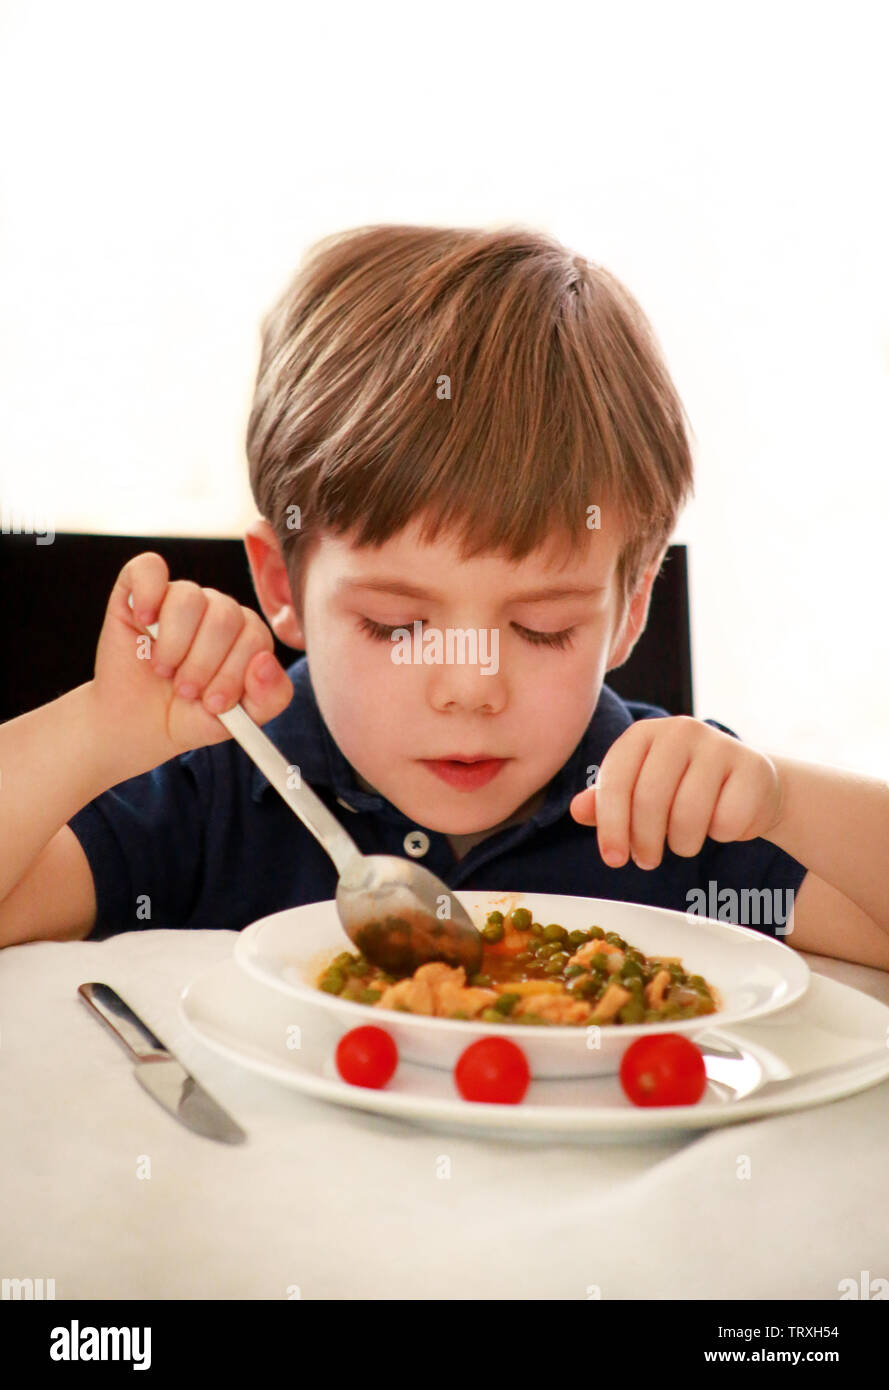 Hungriges Kind im Stuhl sitzend am Tisch in der Küche und essen mit Löffel, gekochte Erbsen mit Tomaten. Kinder essen und gesunde Ernährung Lebensmittel Konzept. Stockfoto